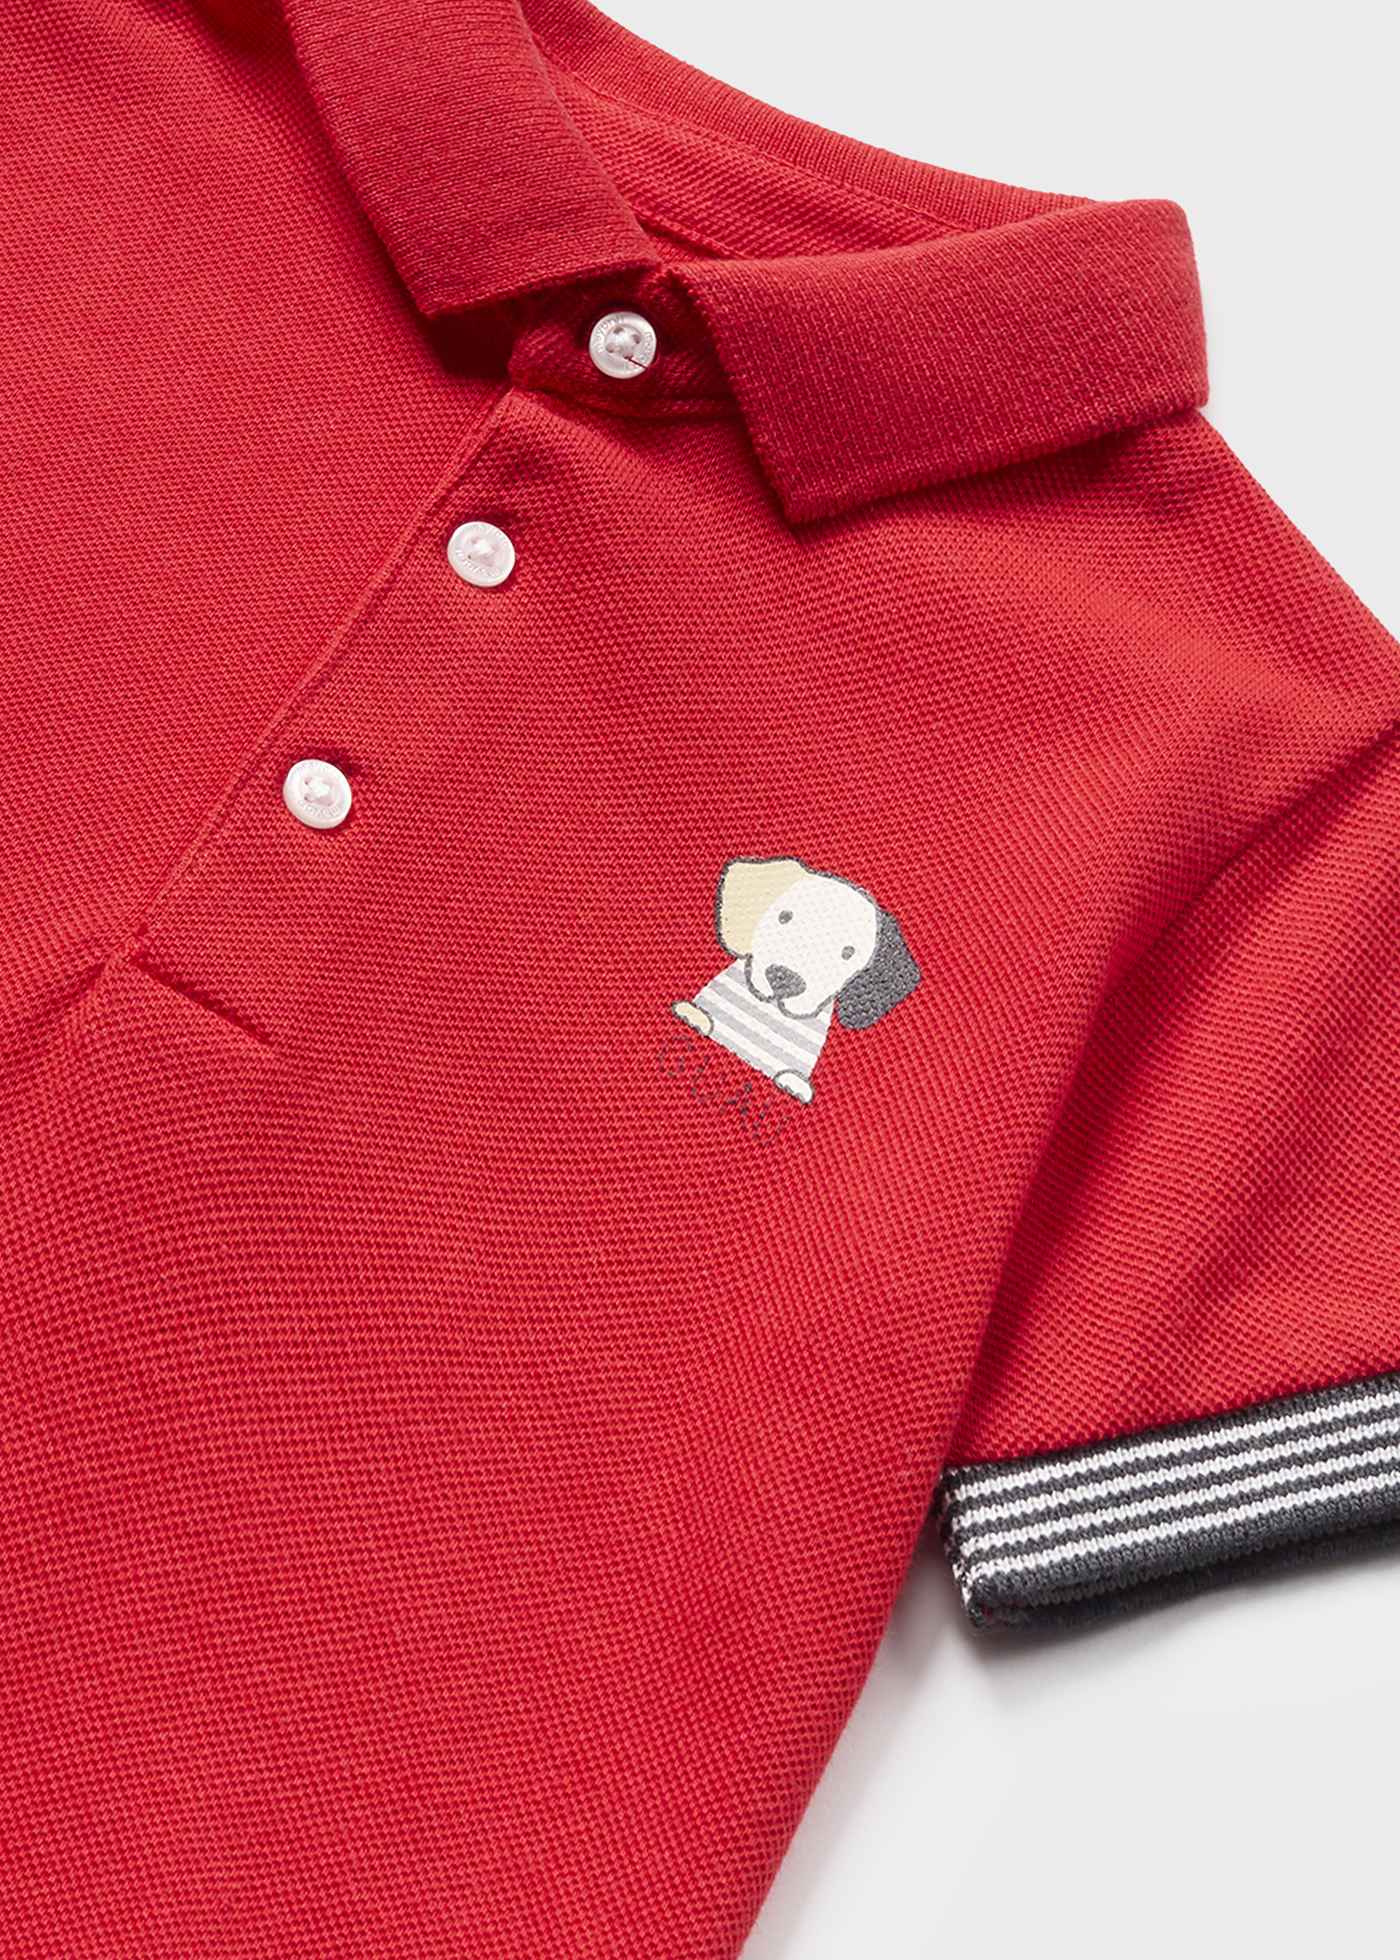 Print Polo shirt baby | ®